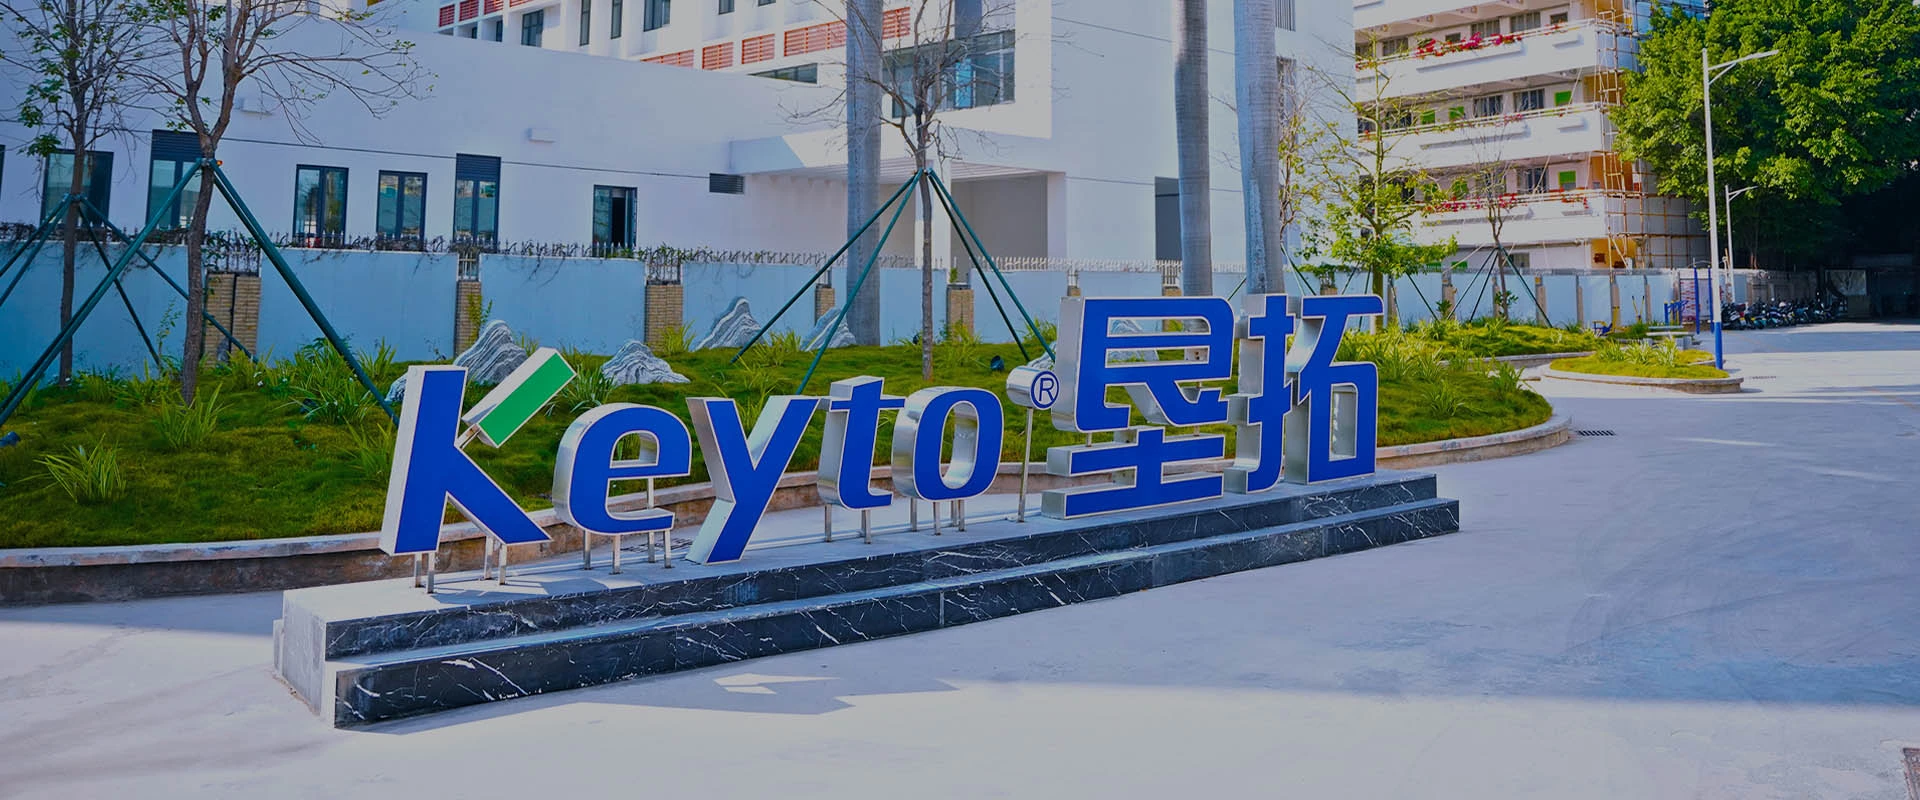 Keyto Company Video Center